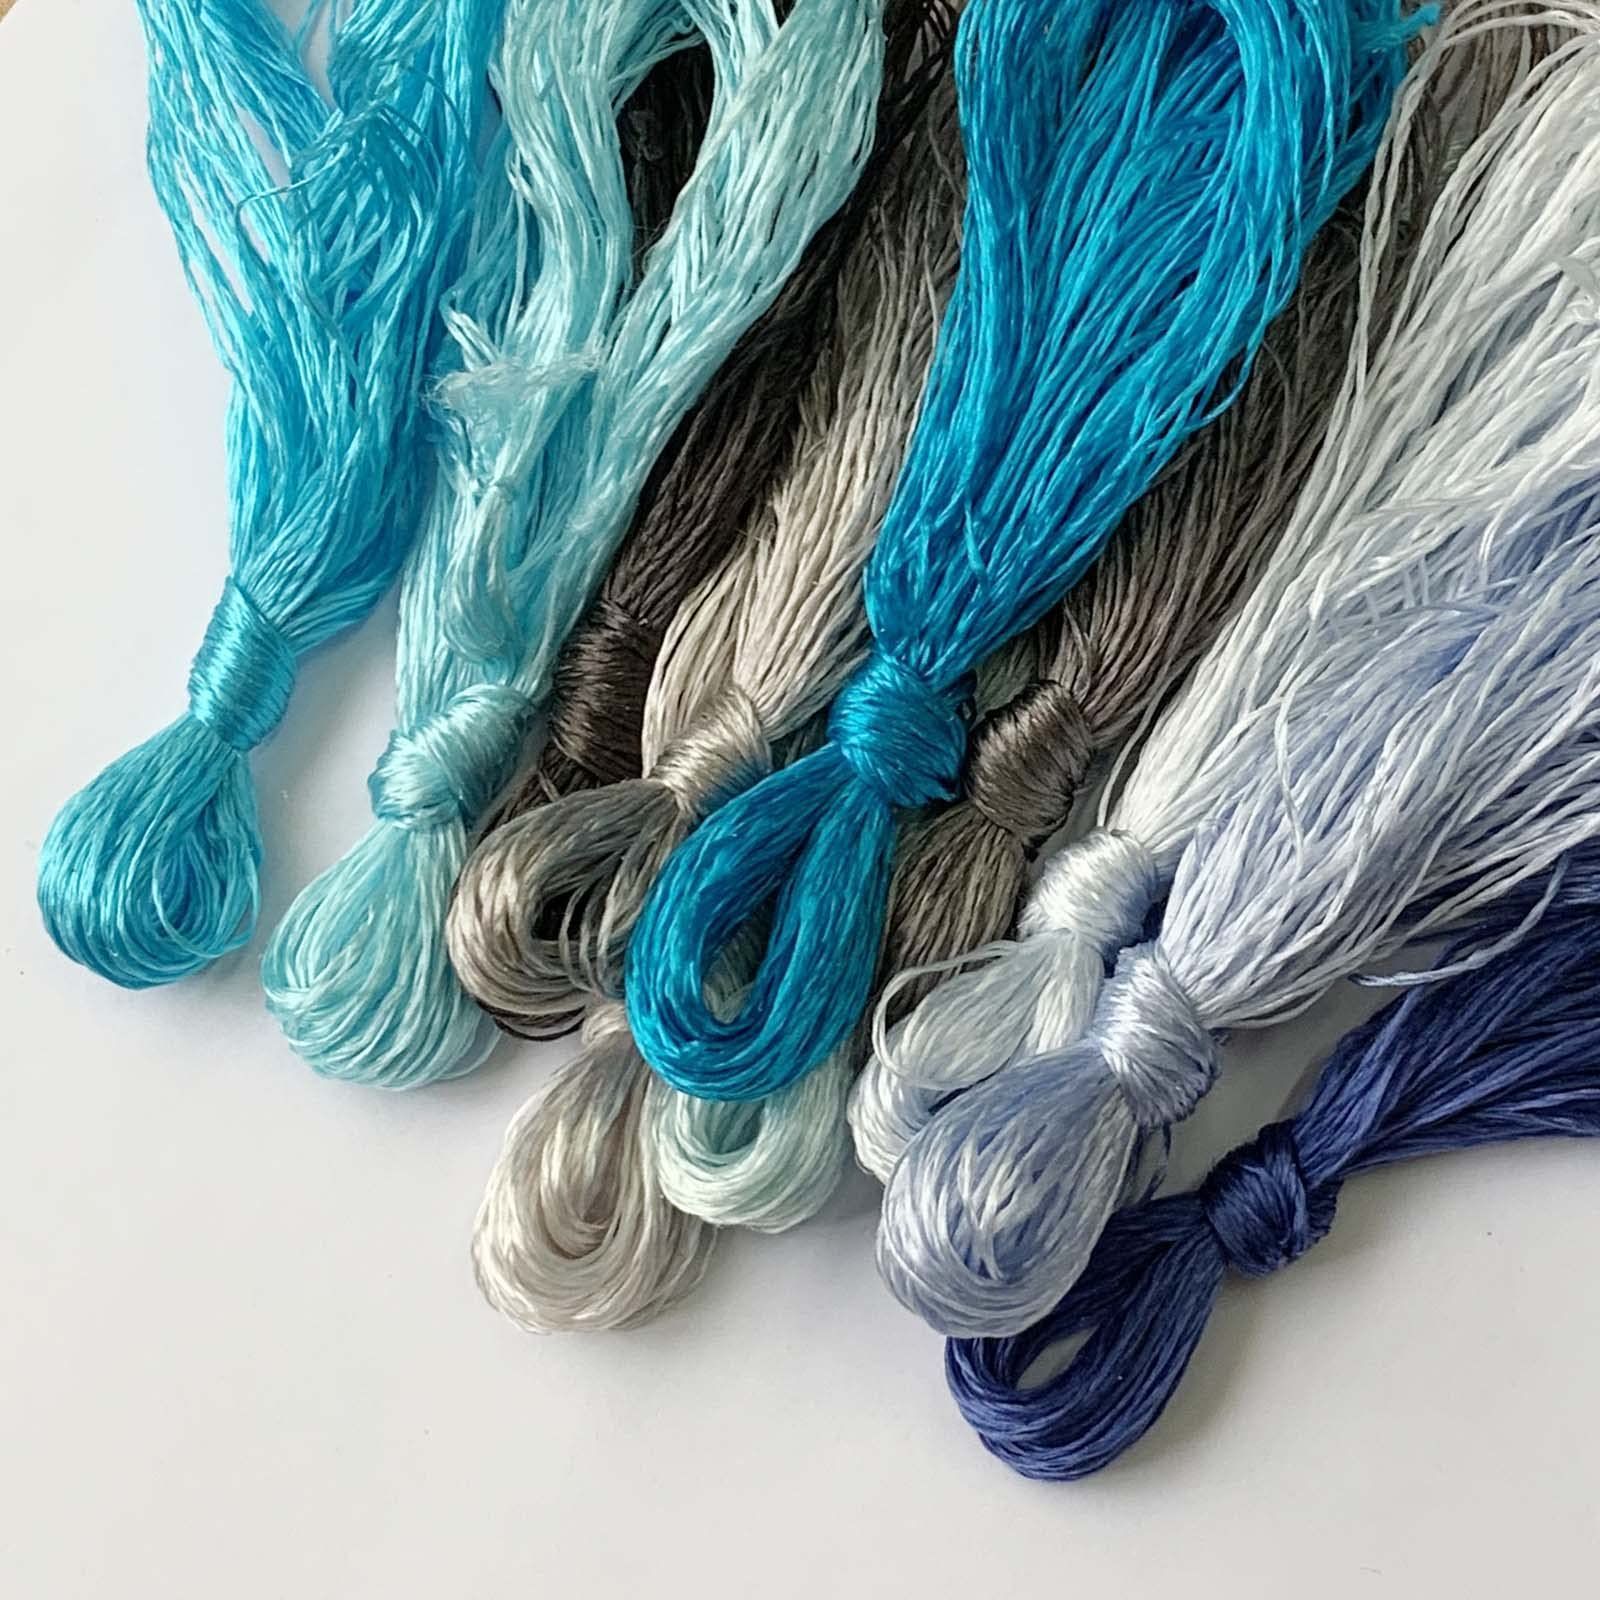 12本 絹糸 光沢きれい 刺しゅう糸 ソーイング糸 手縫い糸 12色 カラー糸 セット 20M 色 計240M (ブルー)